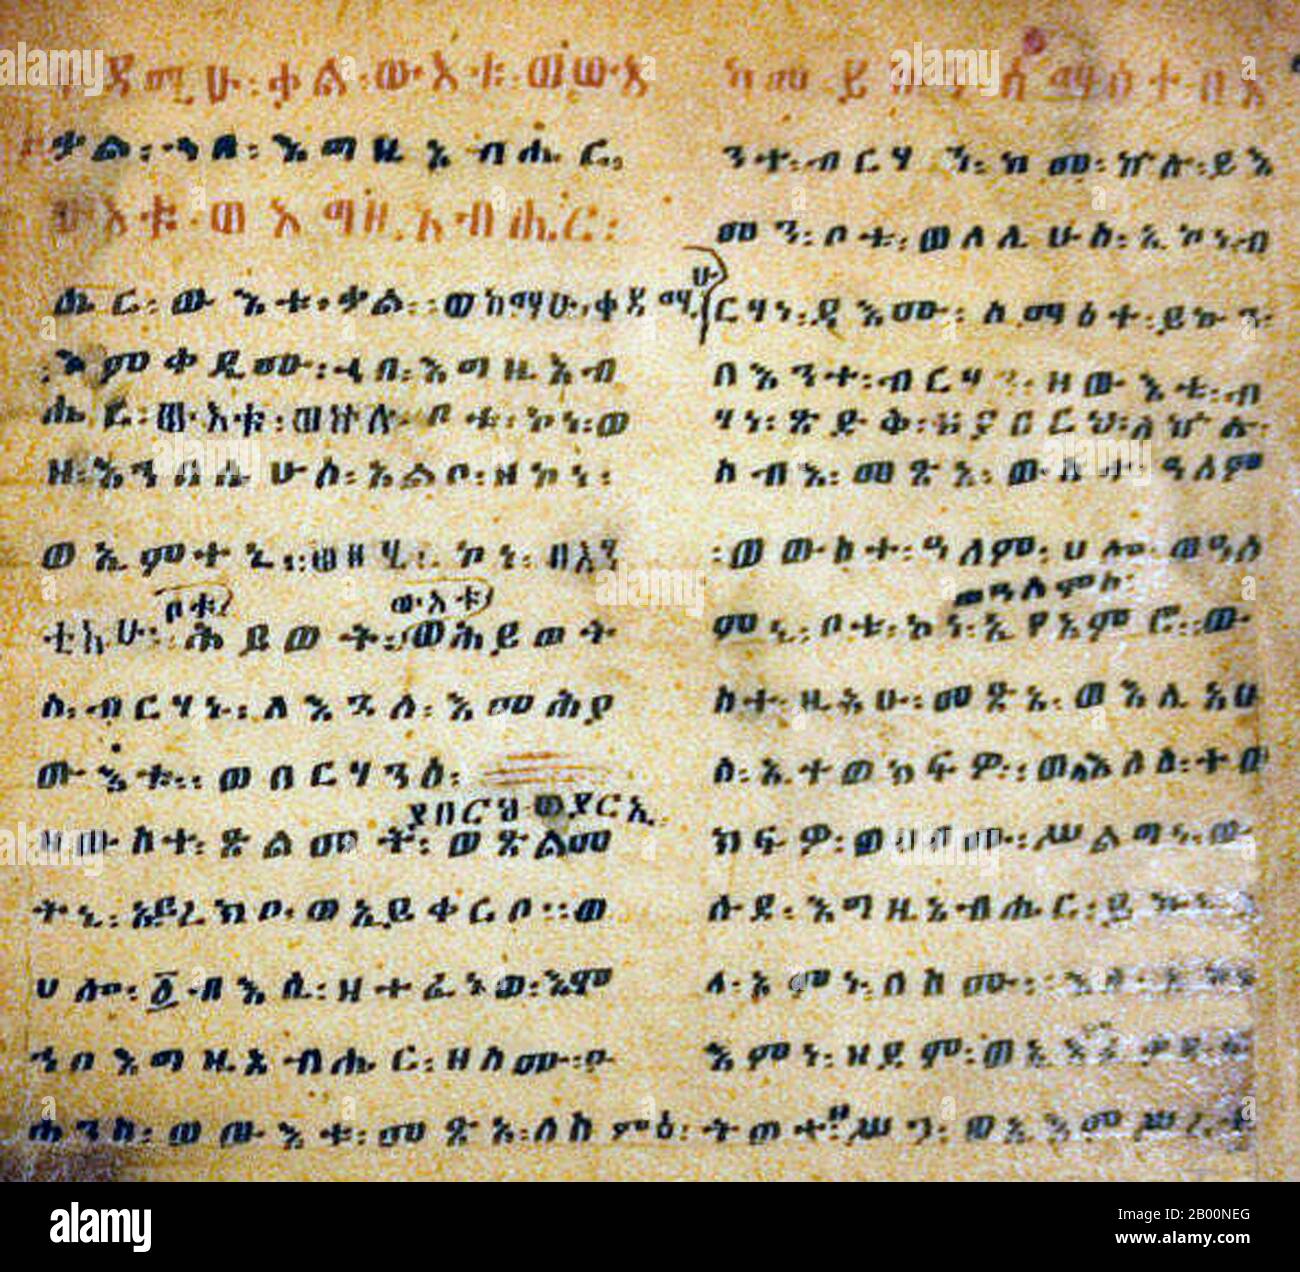 Etiopia: Script GE'ez, Eliza Codex, manoscritto biblico etiope, XVI secolo. GE'ez (anche traslitterato Gi'iz, e meno precisamente chiamato etiope) è un'antica lingua semitica del Sud che si è sviluppata nella regione settentrionale dell'Etiopia e nell'Eritrea meridionale nel Corno d'Africa. In seguito divenne la lingua ufficiale del regno di Aksum e della corte imperiale etiope. GE'ez è scritto con etiope o GE'ez abugida, uno script che è stato originariamente sviluppato specificamente per questo linguaggio. Nei linguaggi che lo usano, come Amharic e Tigrinya, lo script si chiama Fidäl. Foto Stock